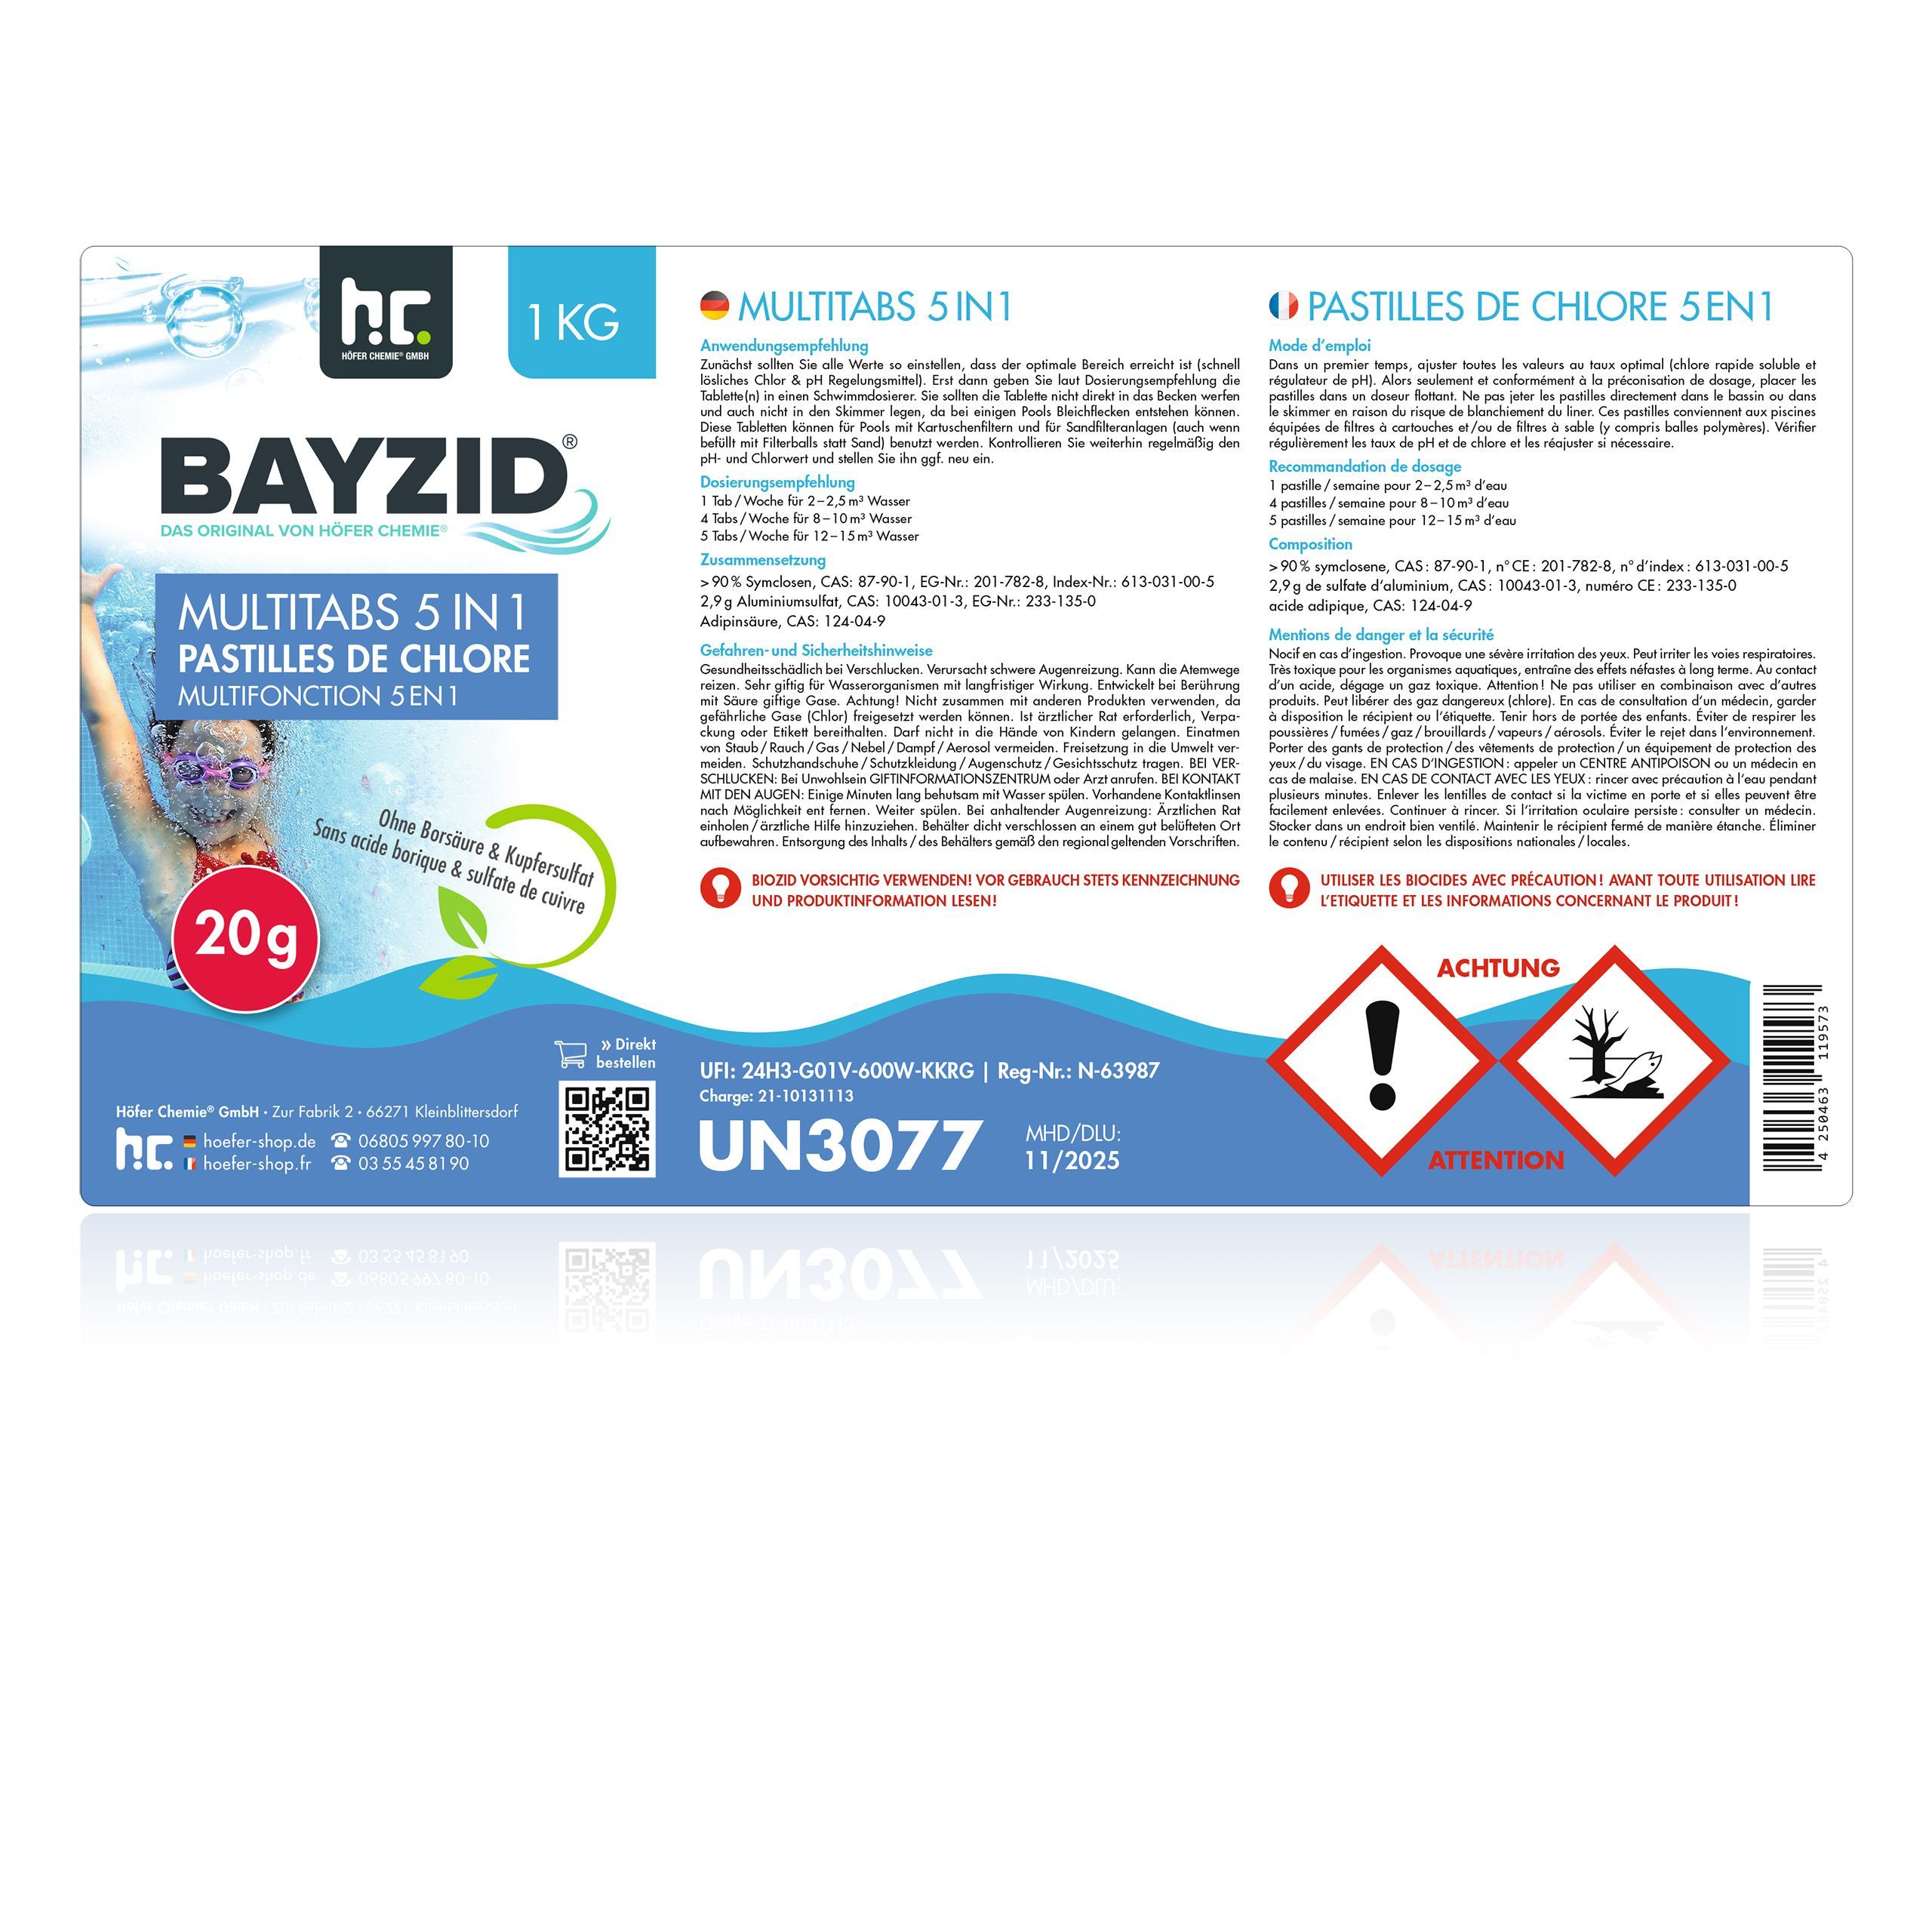 1 kg BAYZID® Multitabs 20g 5in1 für Pools